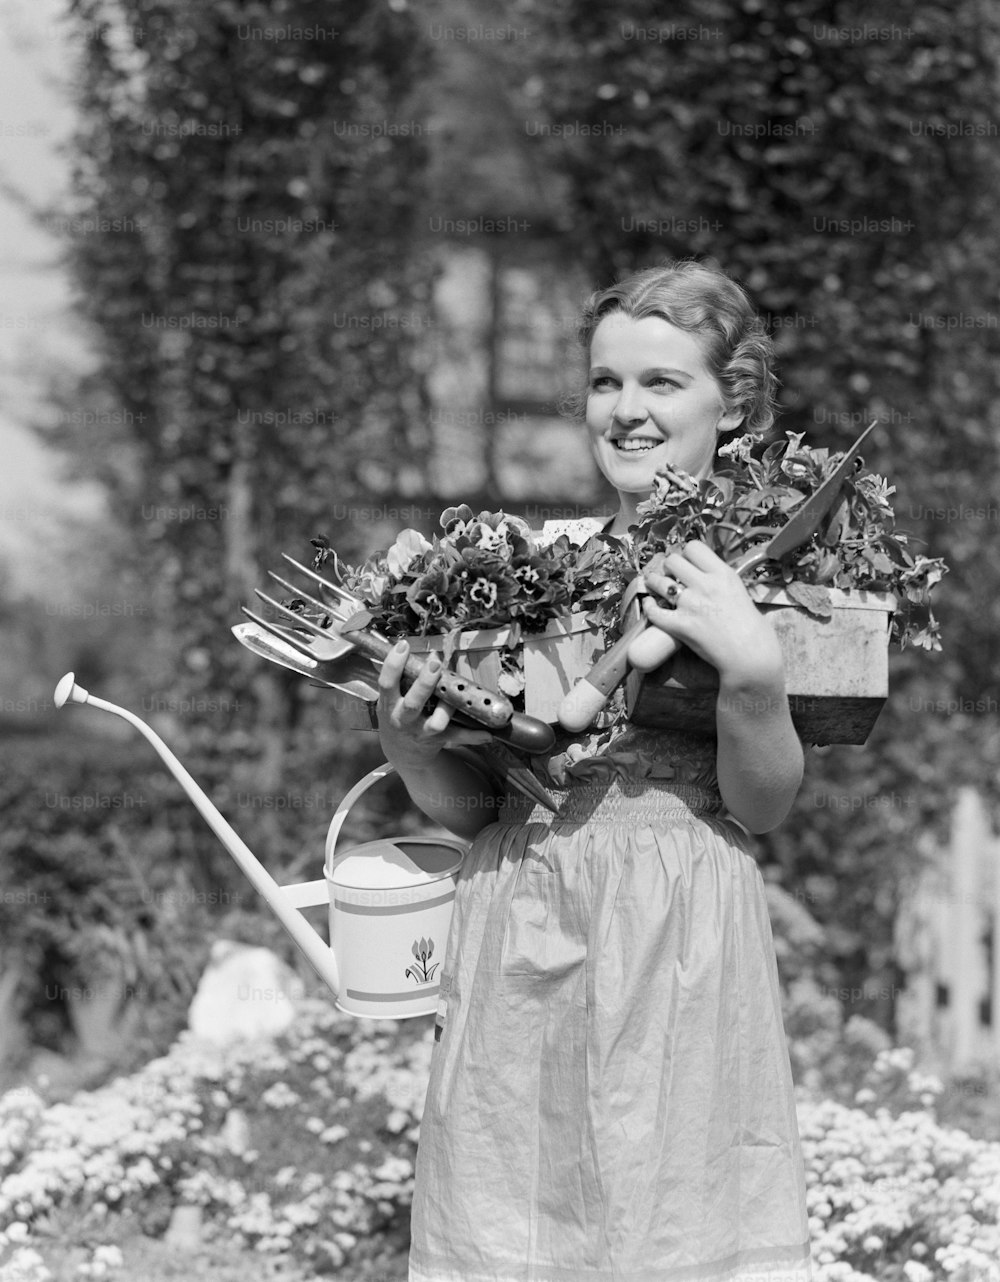 ÉTATS-UNIS - Circa 1930s : Femme debout dans le jardin, souriante, les bras pleins portant un arrosoir, des outils de jardin et des plantes en pot, portrait.